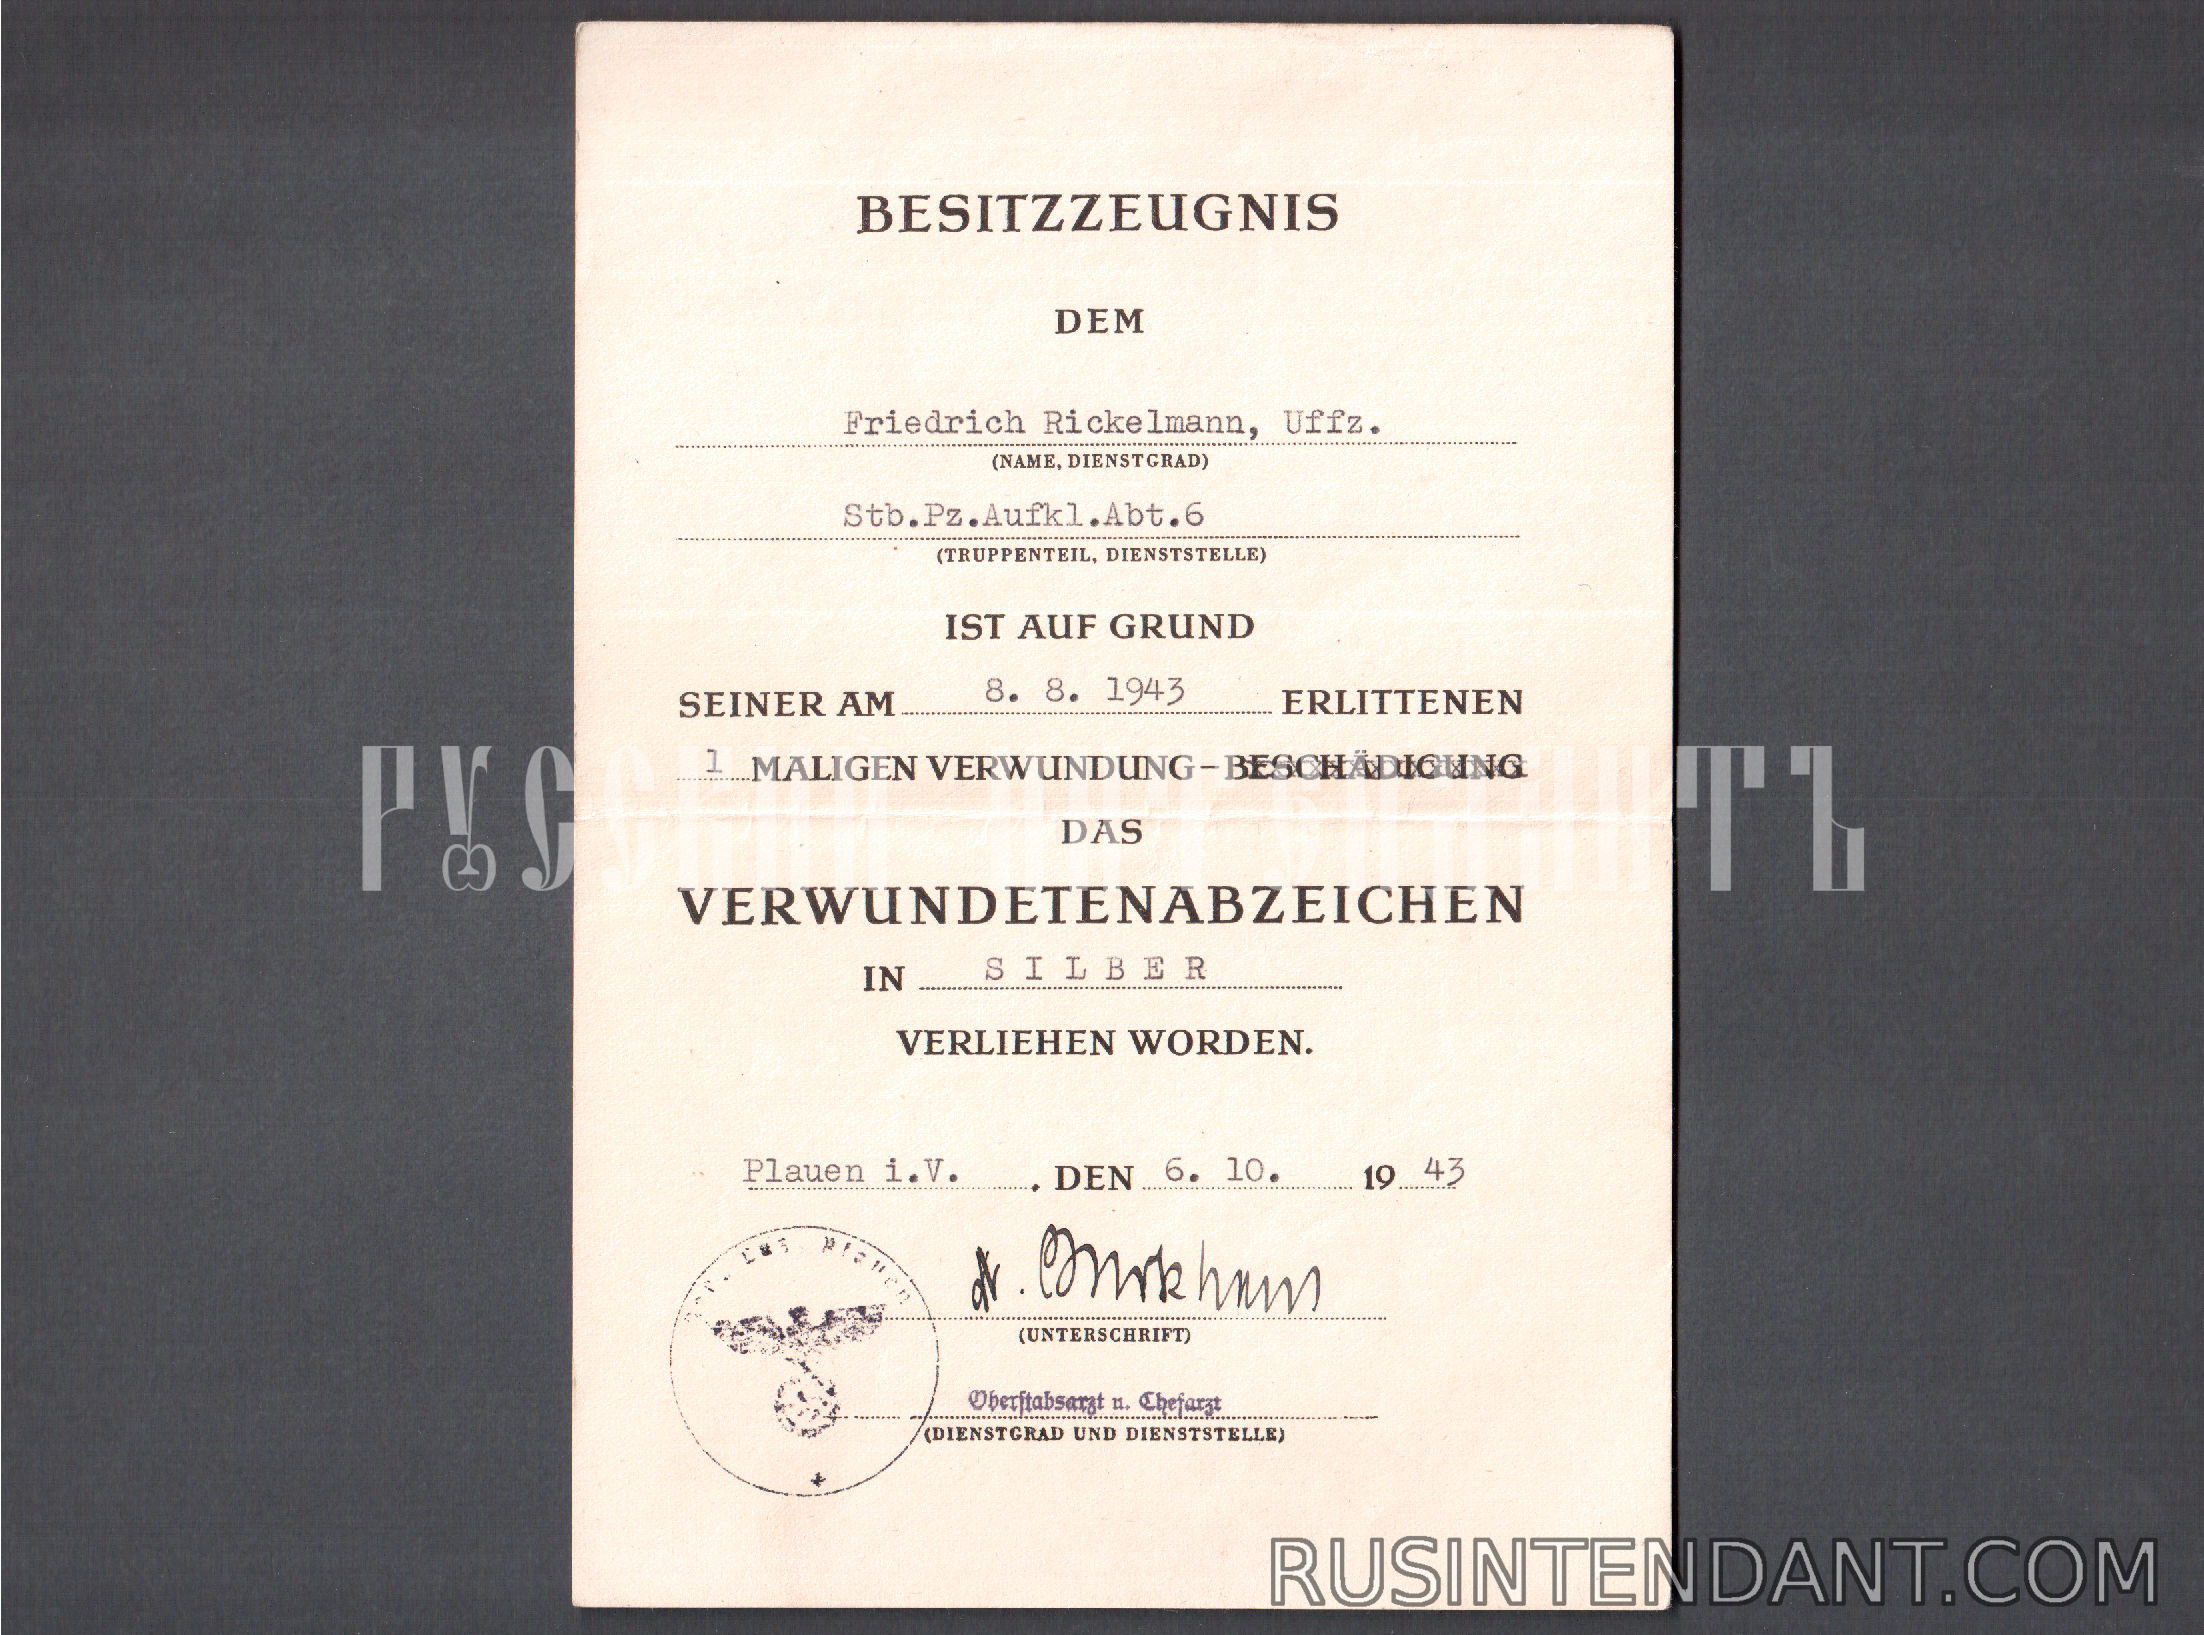 Фото 4: Группа наградных документов фельдфебеля Фридриха Рикельмана 